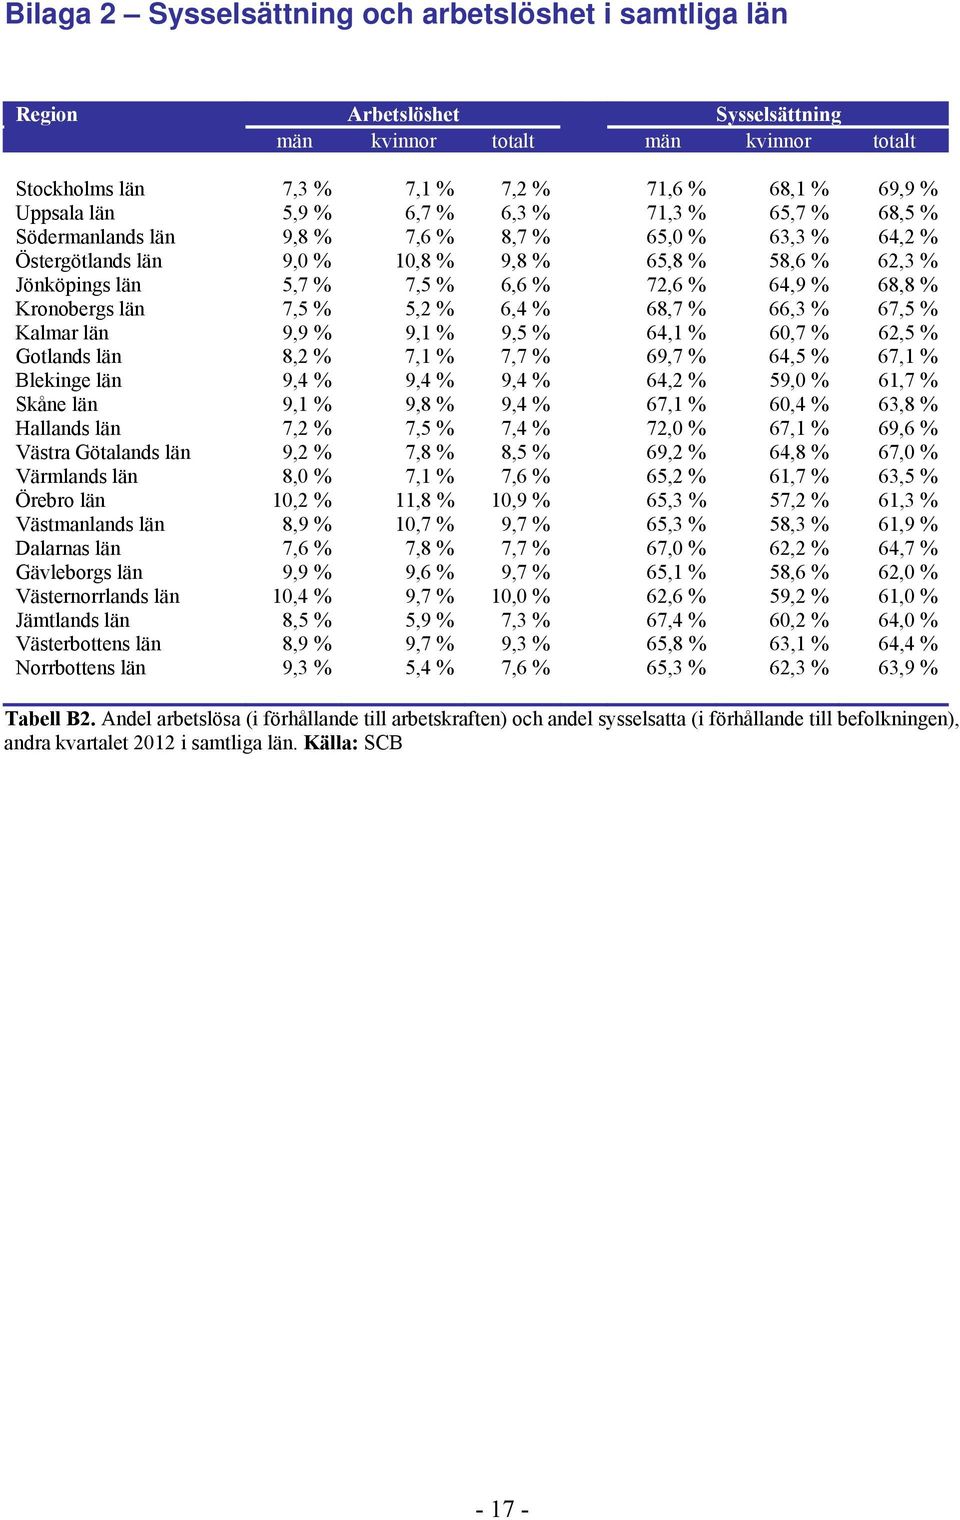 68,8 % Kronobergs län 7,5 % 5,2 % 6,4 % 68,7 % 66,3 % 67,5 % Kalmar län 9,9 % 9,1 % 9,5 % 64,1 % 60,7 % 62,5 % Gotlands län 8,2 % 7,1 % 7,7 % 69,7 % 64,5 % 67,1 % Blekinge län 9,4 % 9,4 % 9,4 % 64,2